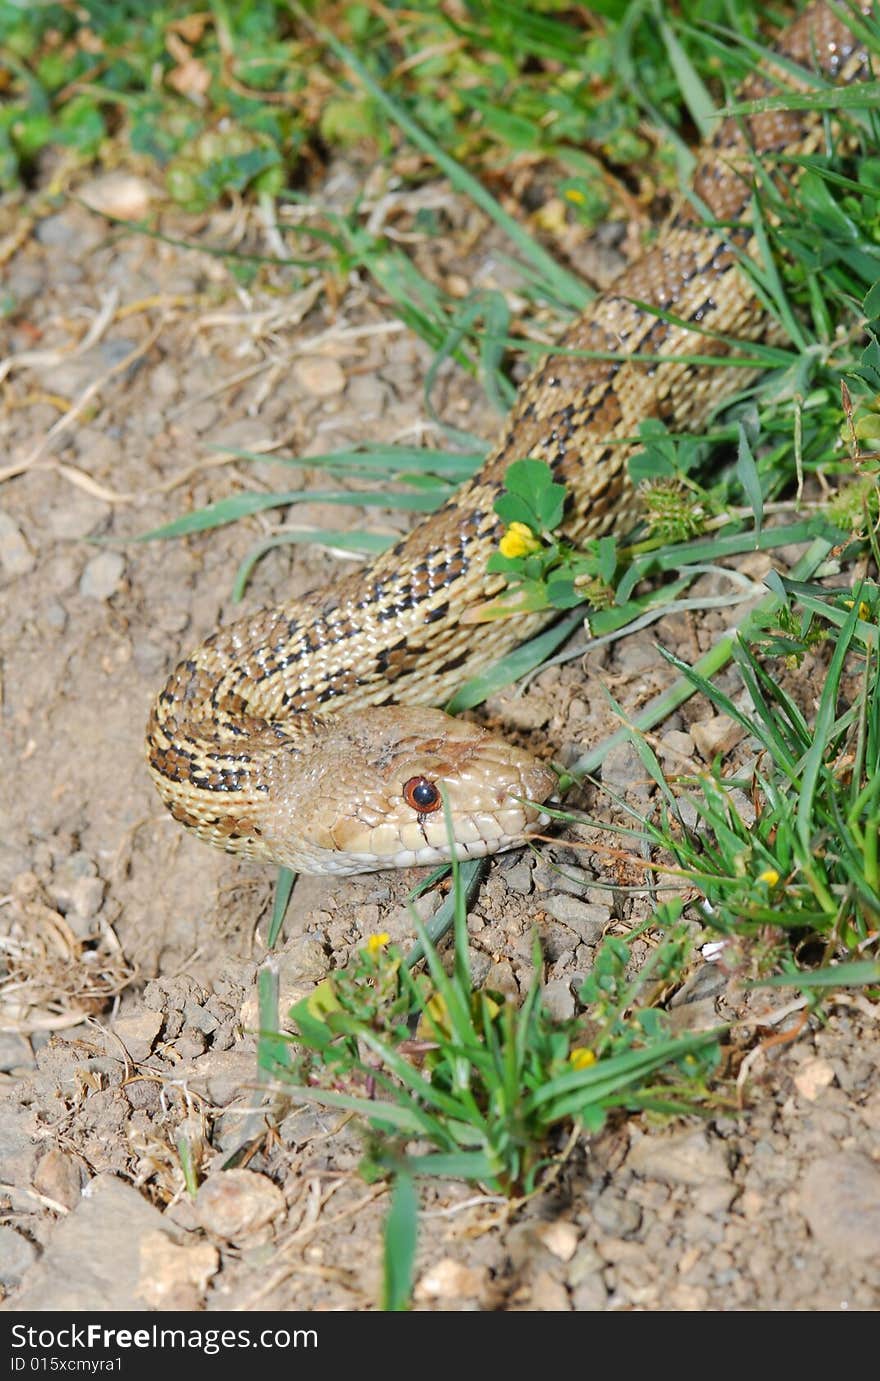 California Gopher snake, Henry coe state park, Santa Clara County, California. California Gopher snake, Henry coe state park, Santa Clara County, California